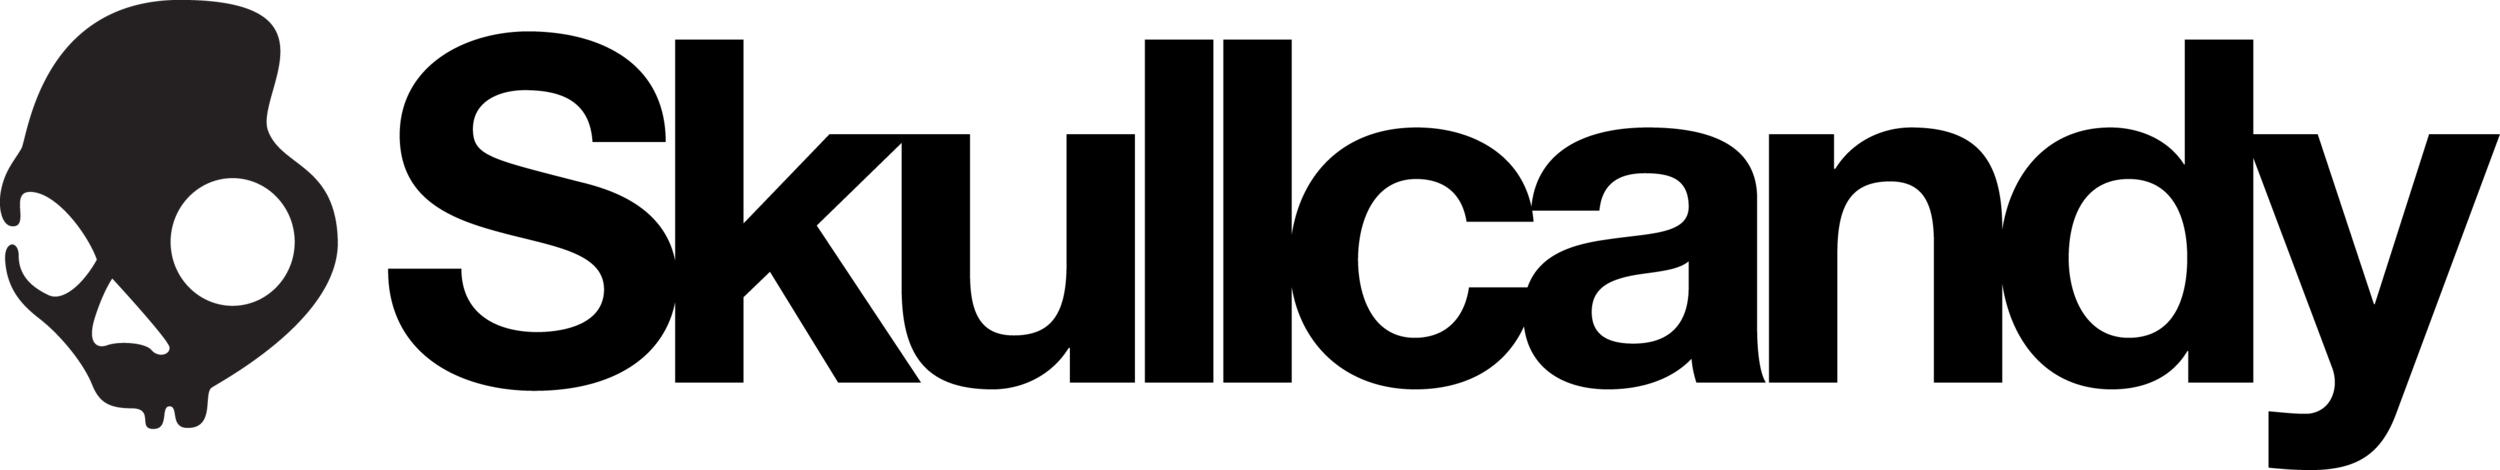 Skullface Logo BLACK-01.png